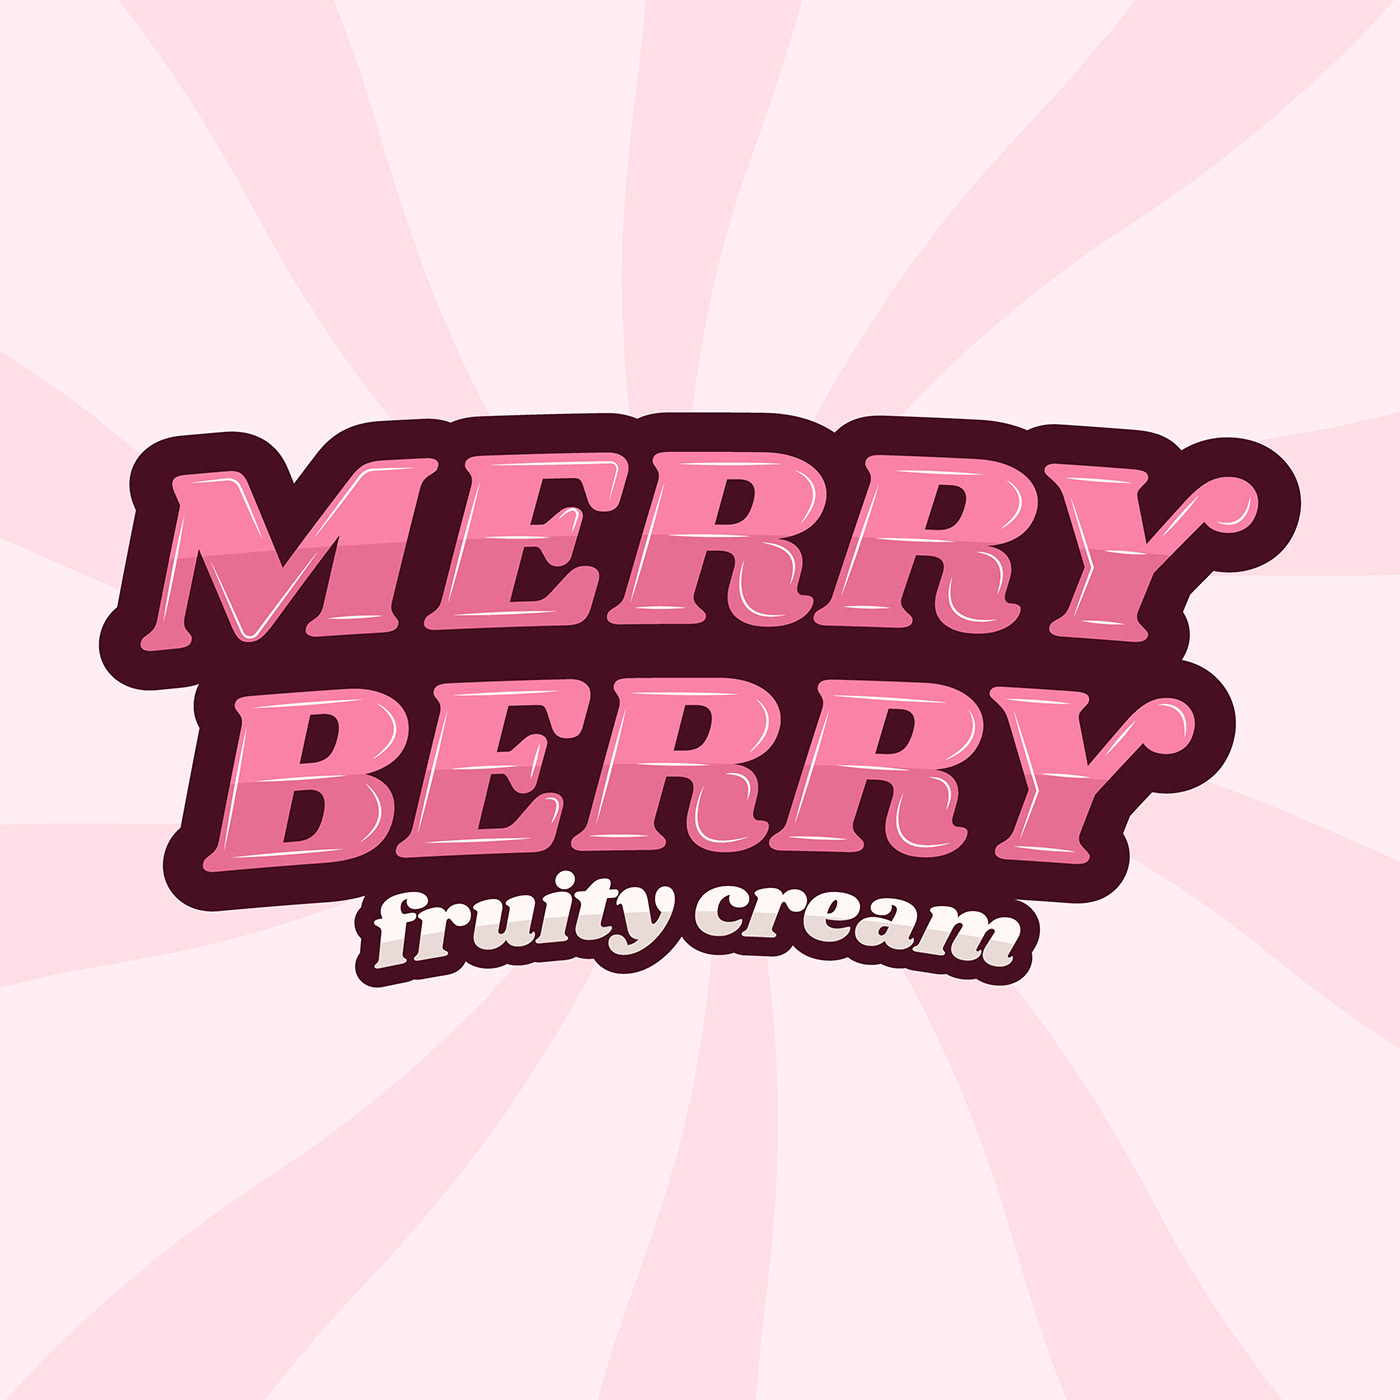 mascot logo Logo Design Instagram Stories Social Media Design logo groovy Retro ice cream Packaging Brand Design